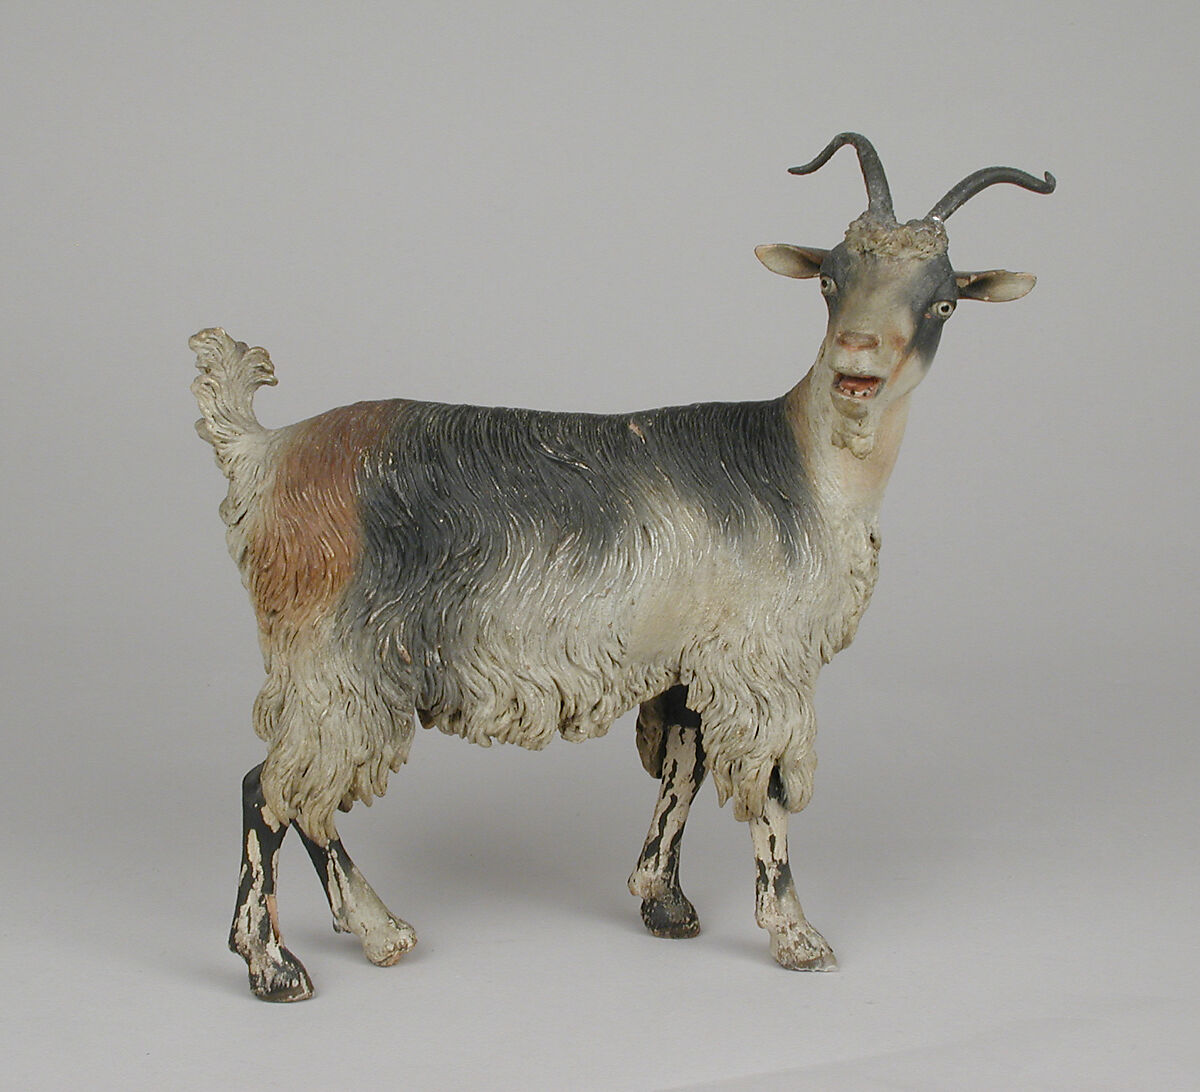 Female adult goat, Polychromed terracotta body, wooden legs, metal horns